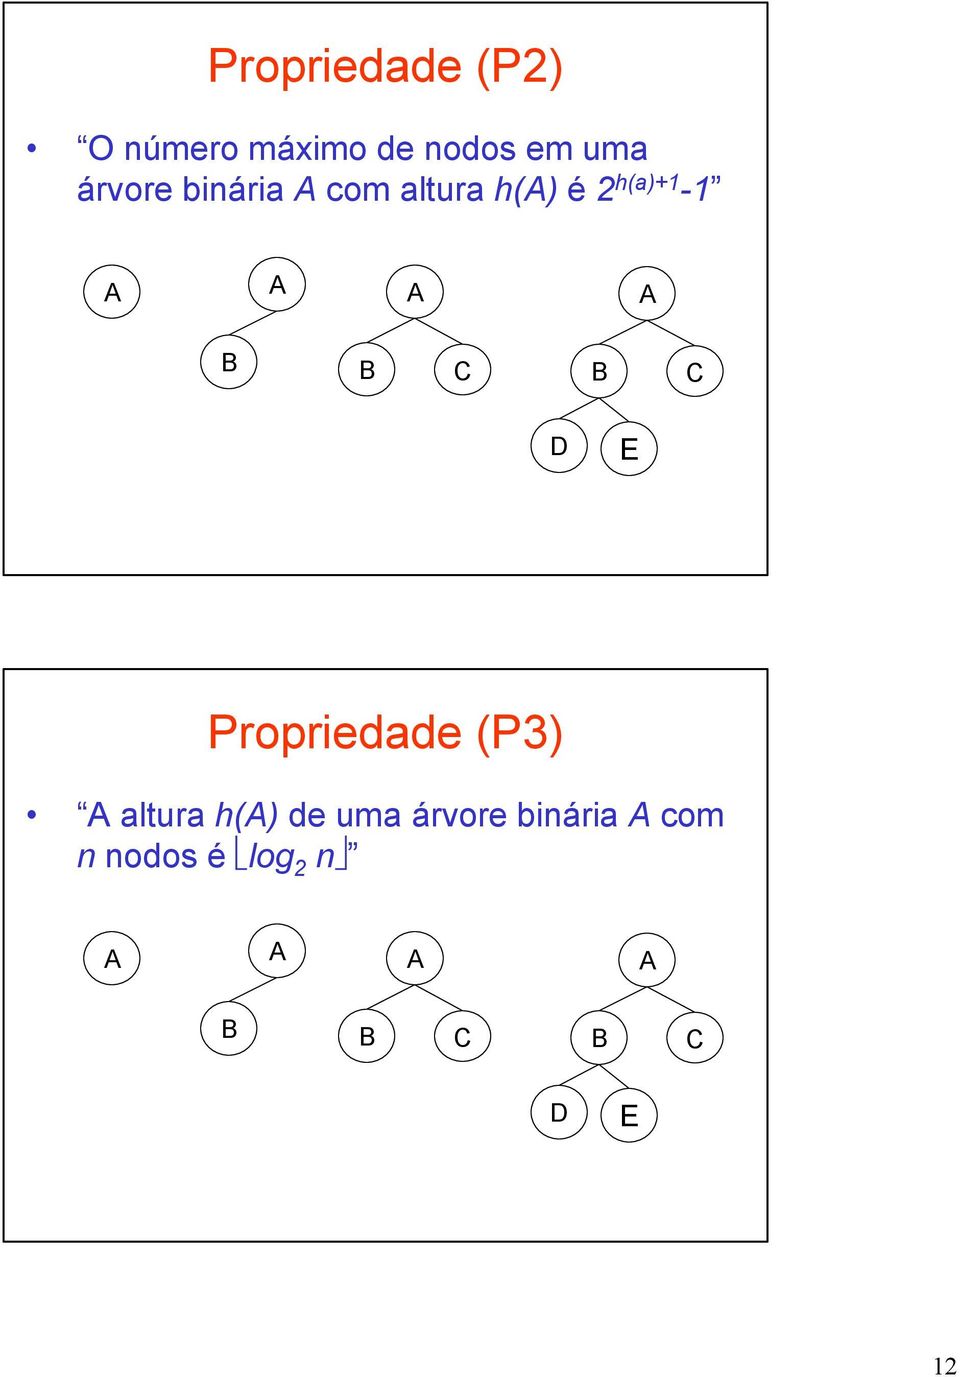 h(a)+1-1 Propriedade (P3) altura h() de